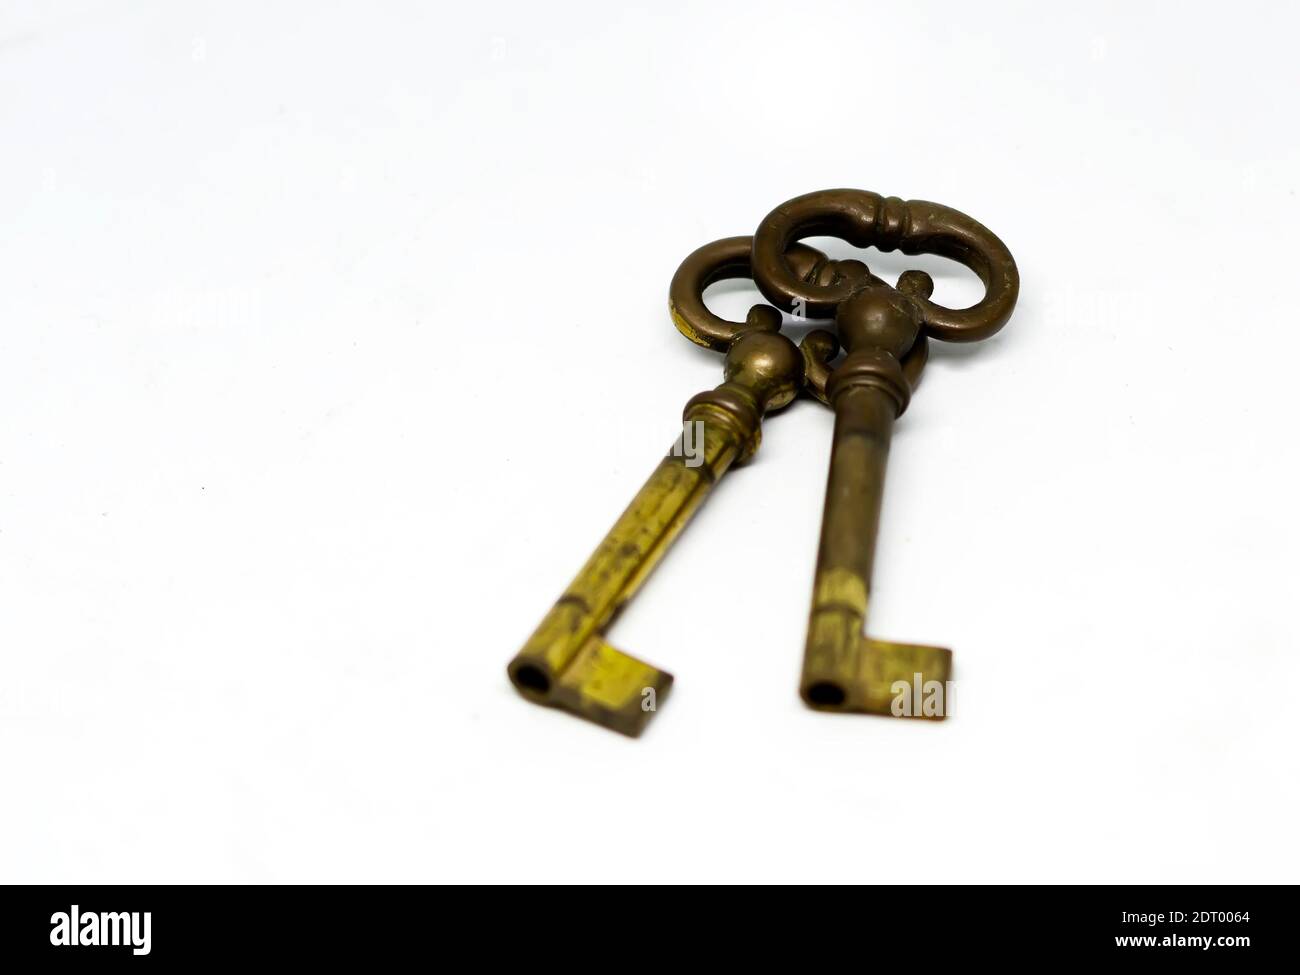 Une paire de vieilles clés en laiton oxydé isolées sur fond blanc. Concept de sécurité et de protection Banque D'Images